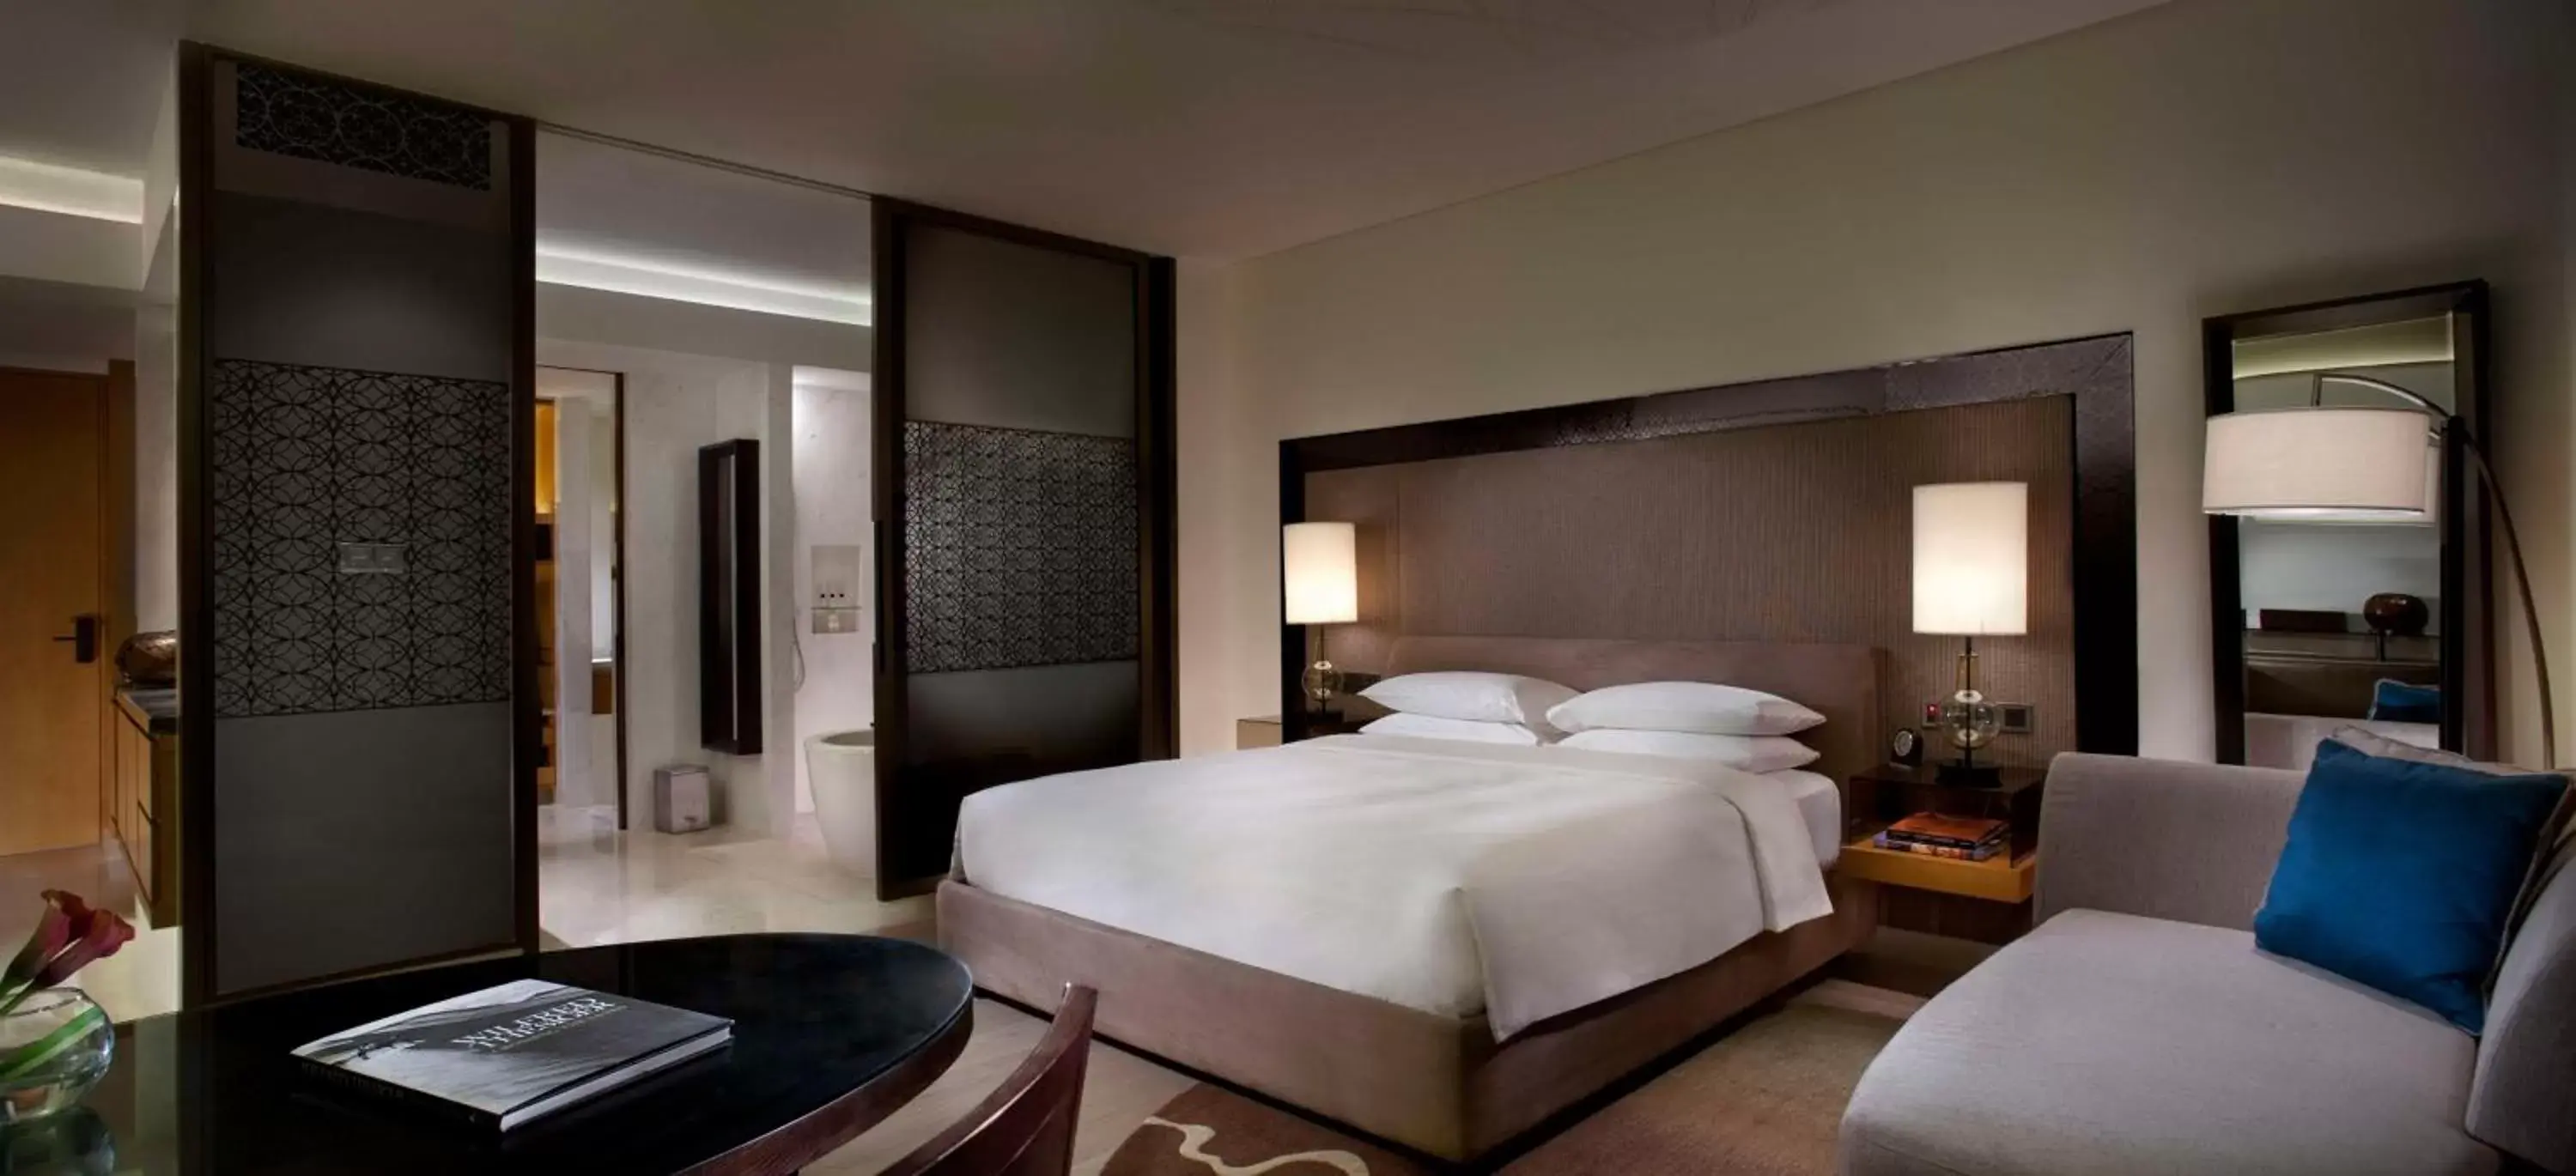 Bedroom, Bed in Park Hyatt Abu Dhabi Hotel and Villas